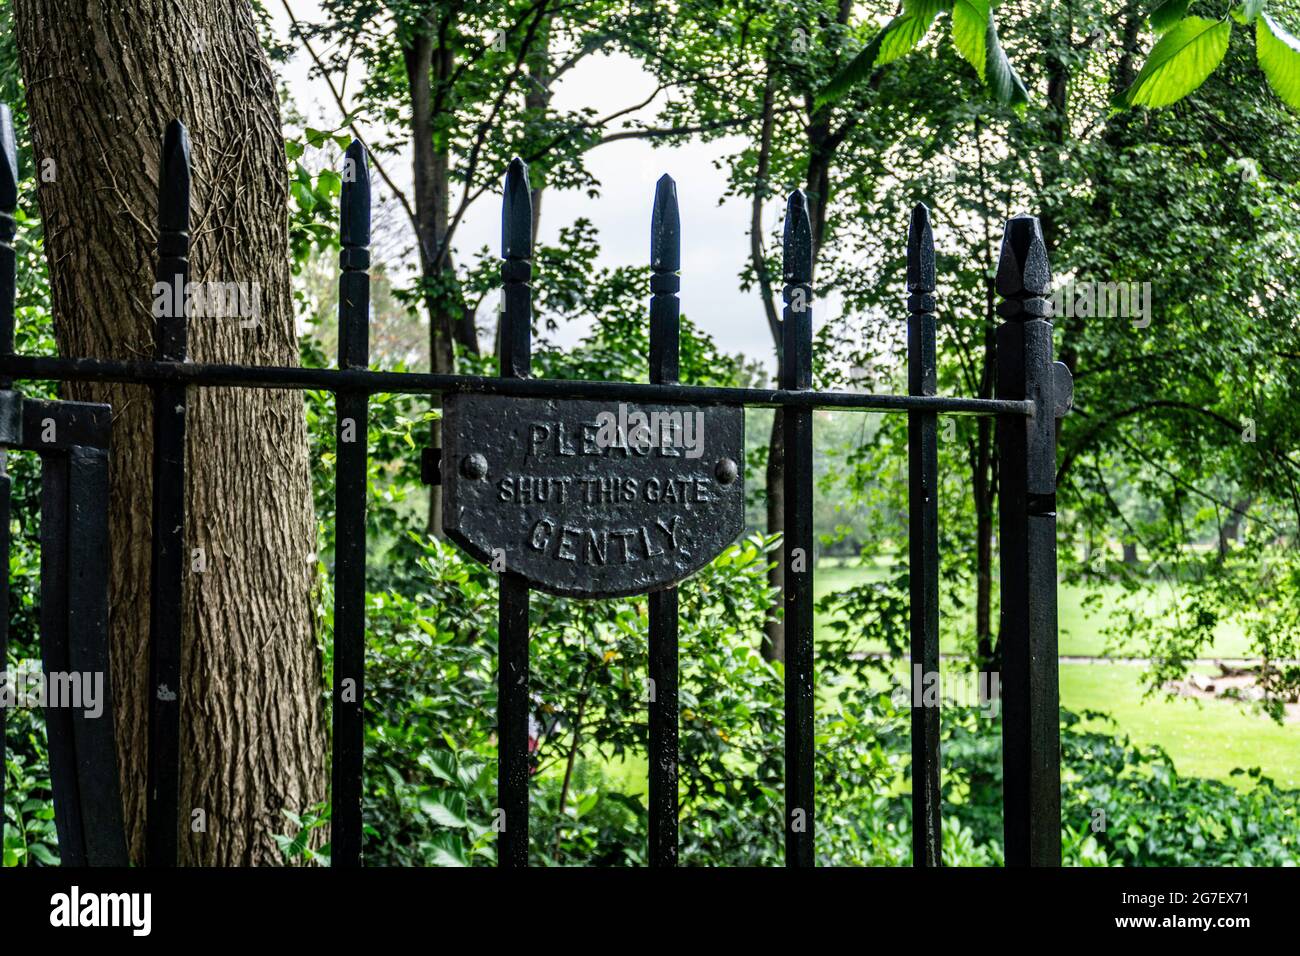 Merrion Square Park, Dublino, Irlanda. Una delle porte d'ingresso ci ricorda di chiudere delicatamente il cancello. Il Parco risale al 1700. Foto Stock